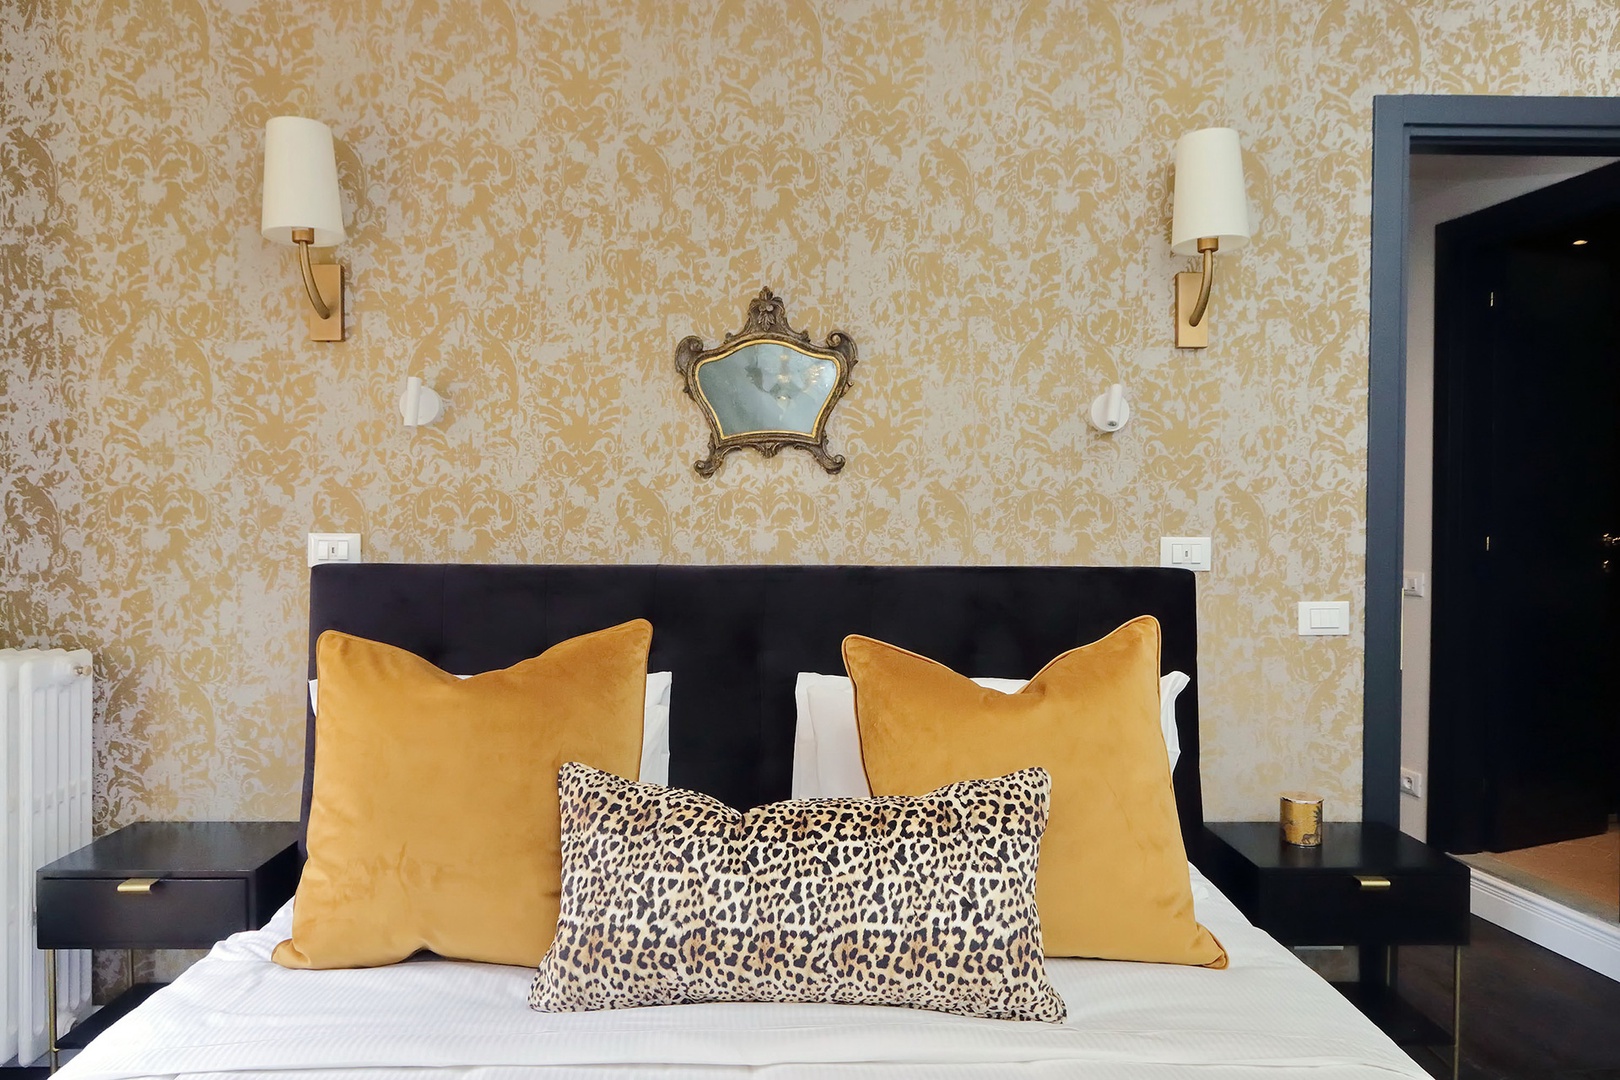 Luxurious details in bedroom 1.